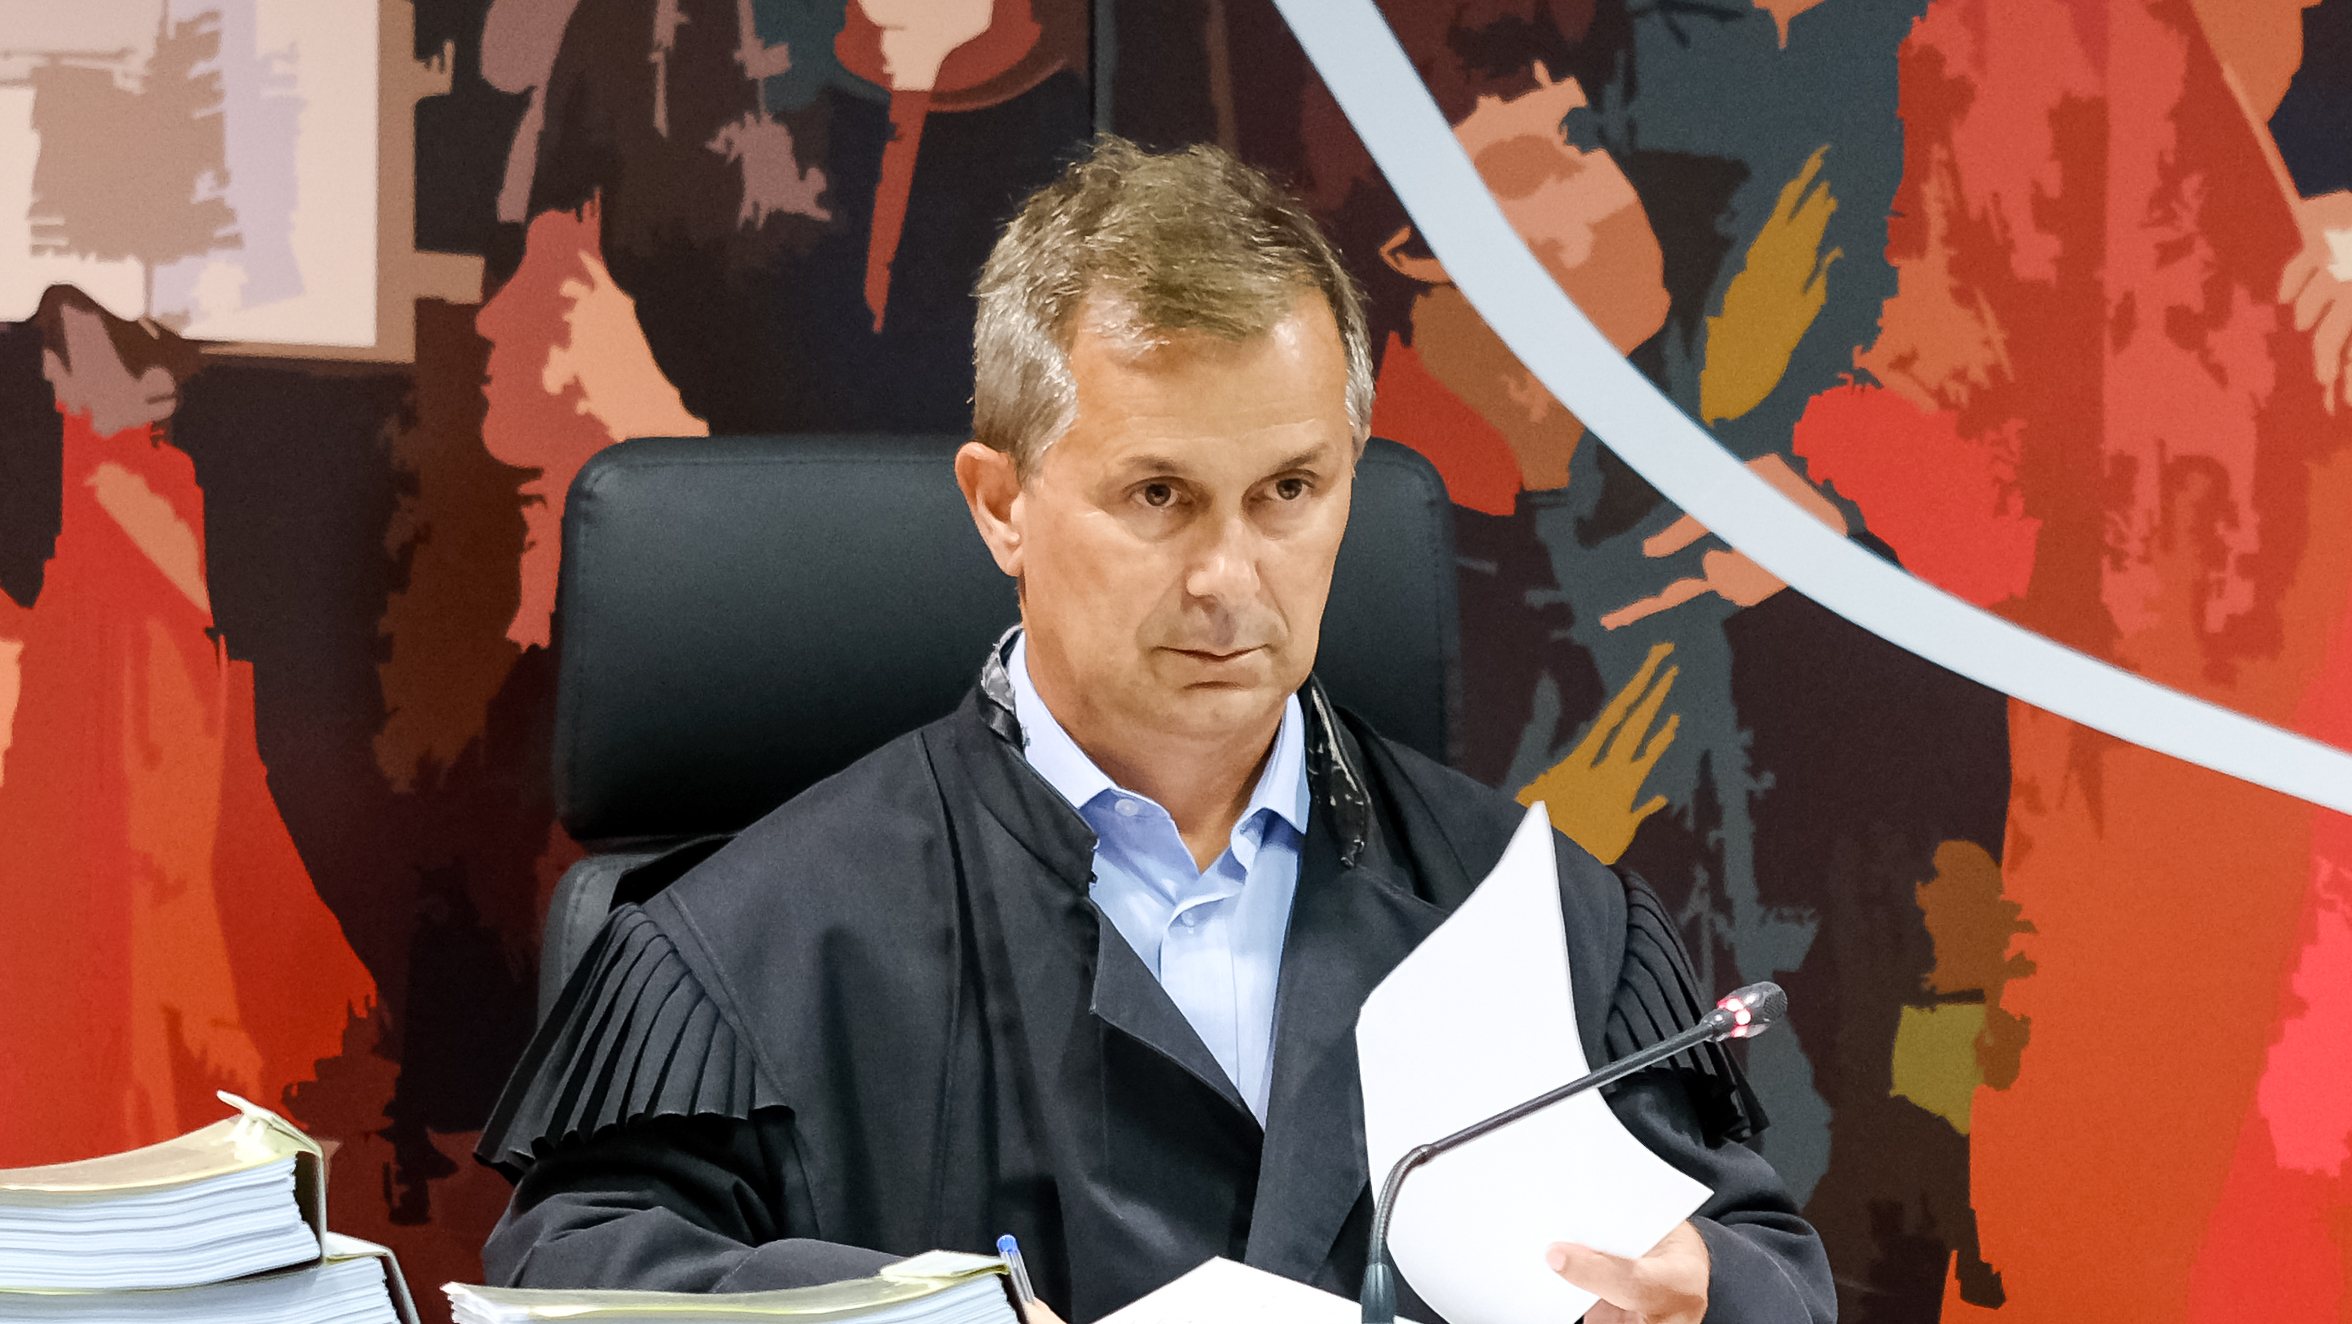 O juiz de instrução Ivo Rosa foi graduado em juiz desembargador e foi colocado provisoriamente no Tribunal da Relação de Lisboa